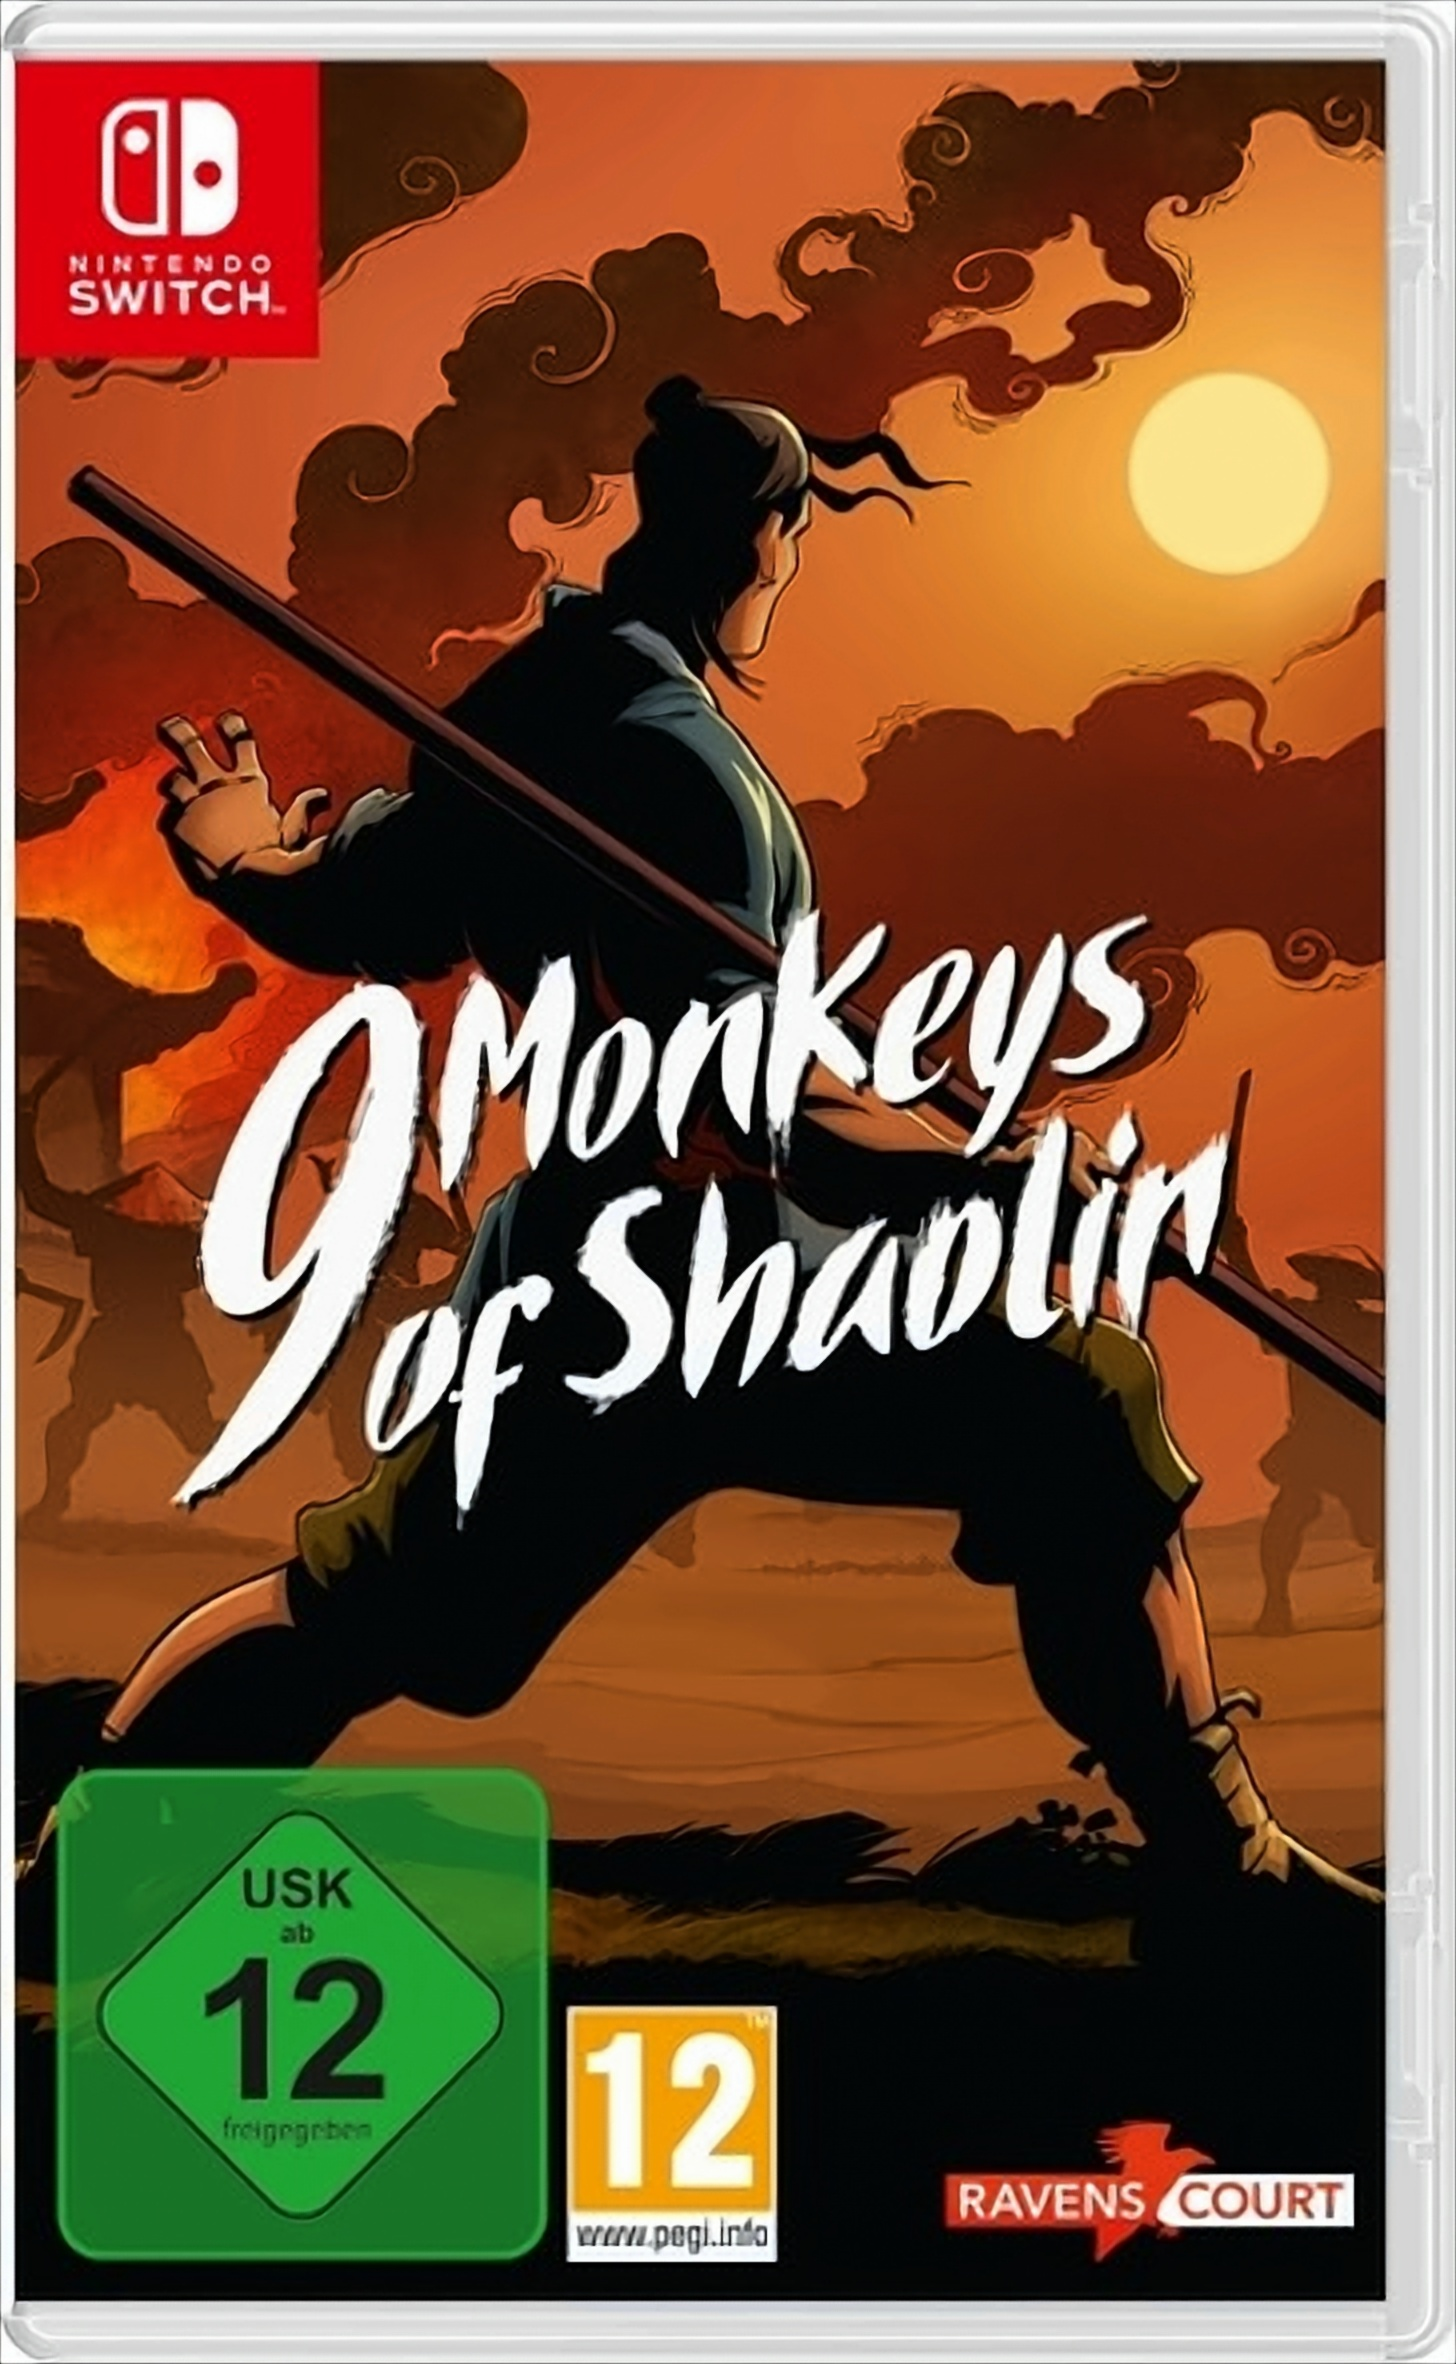 9 Monkeys of Shaolin - Switch] [Nintendo